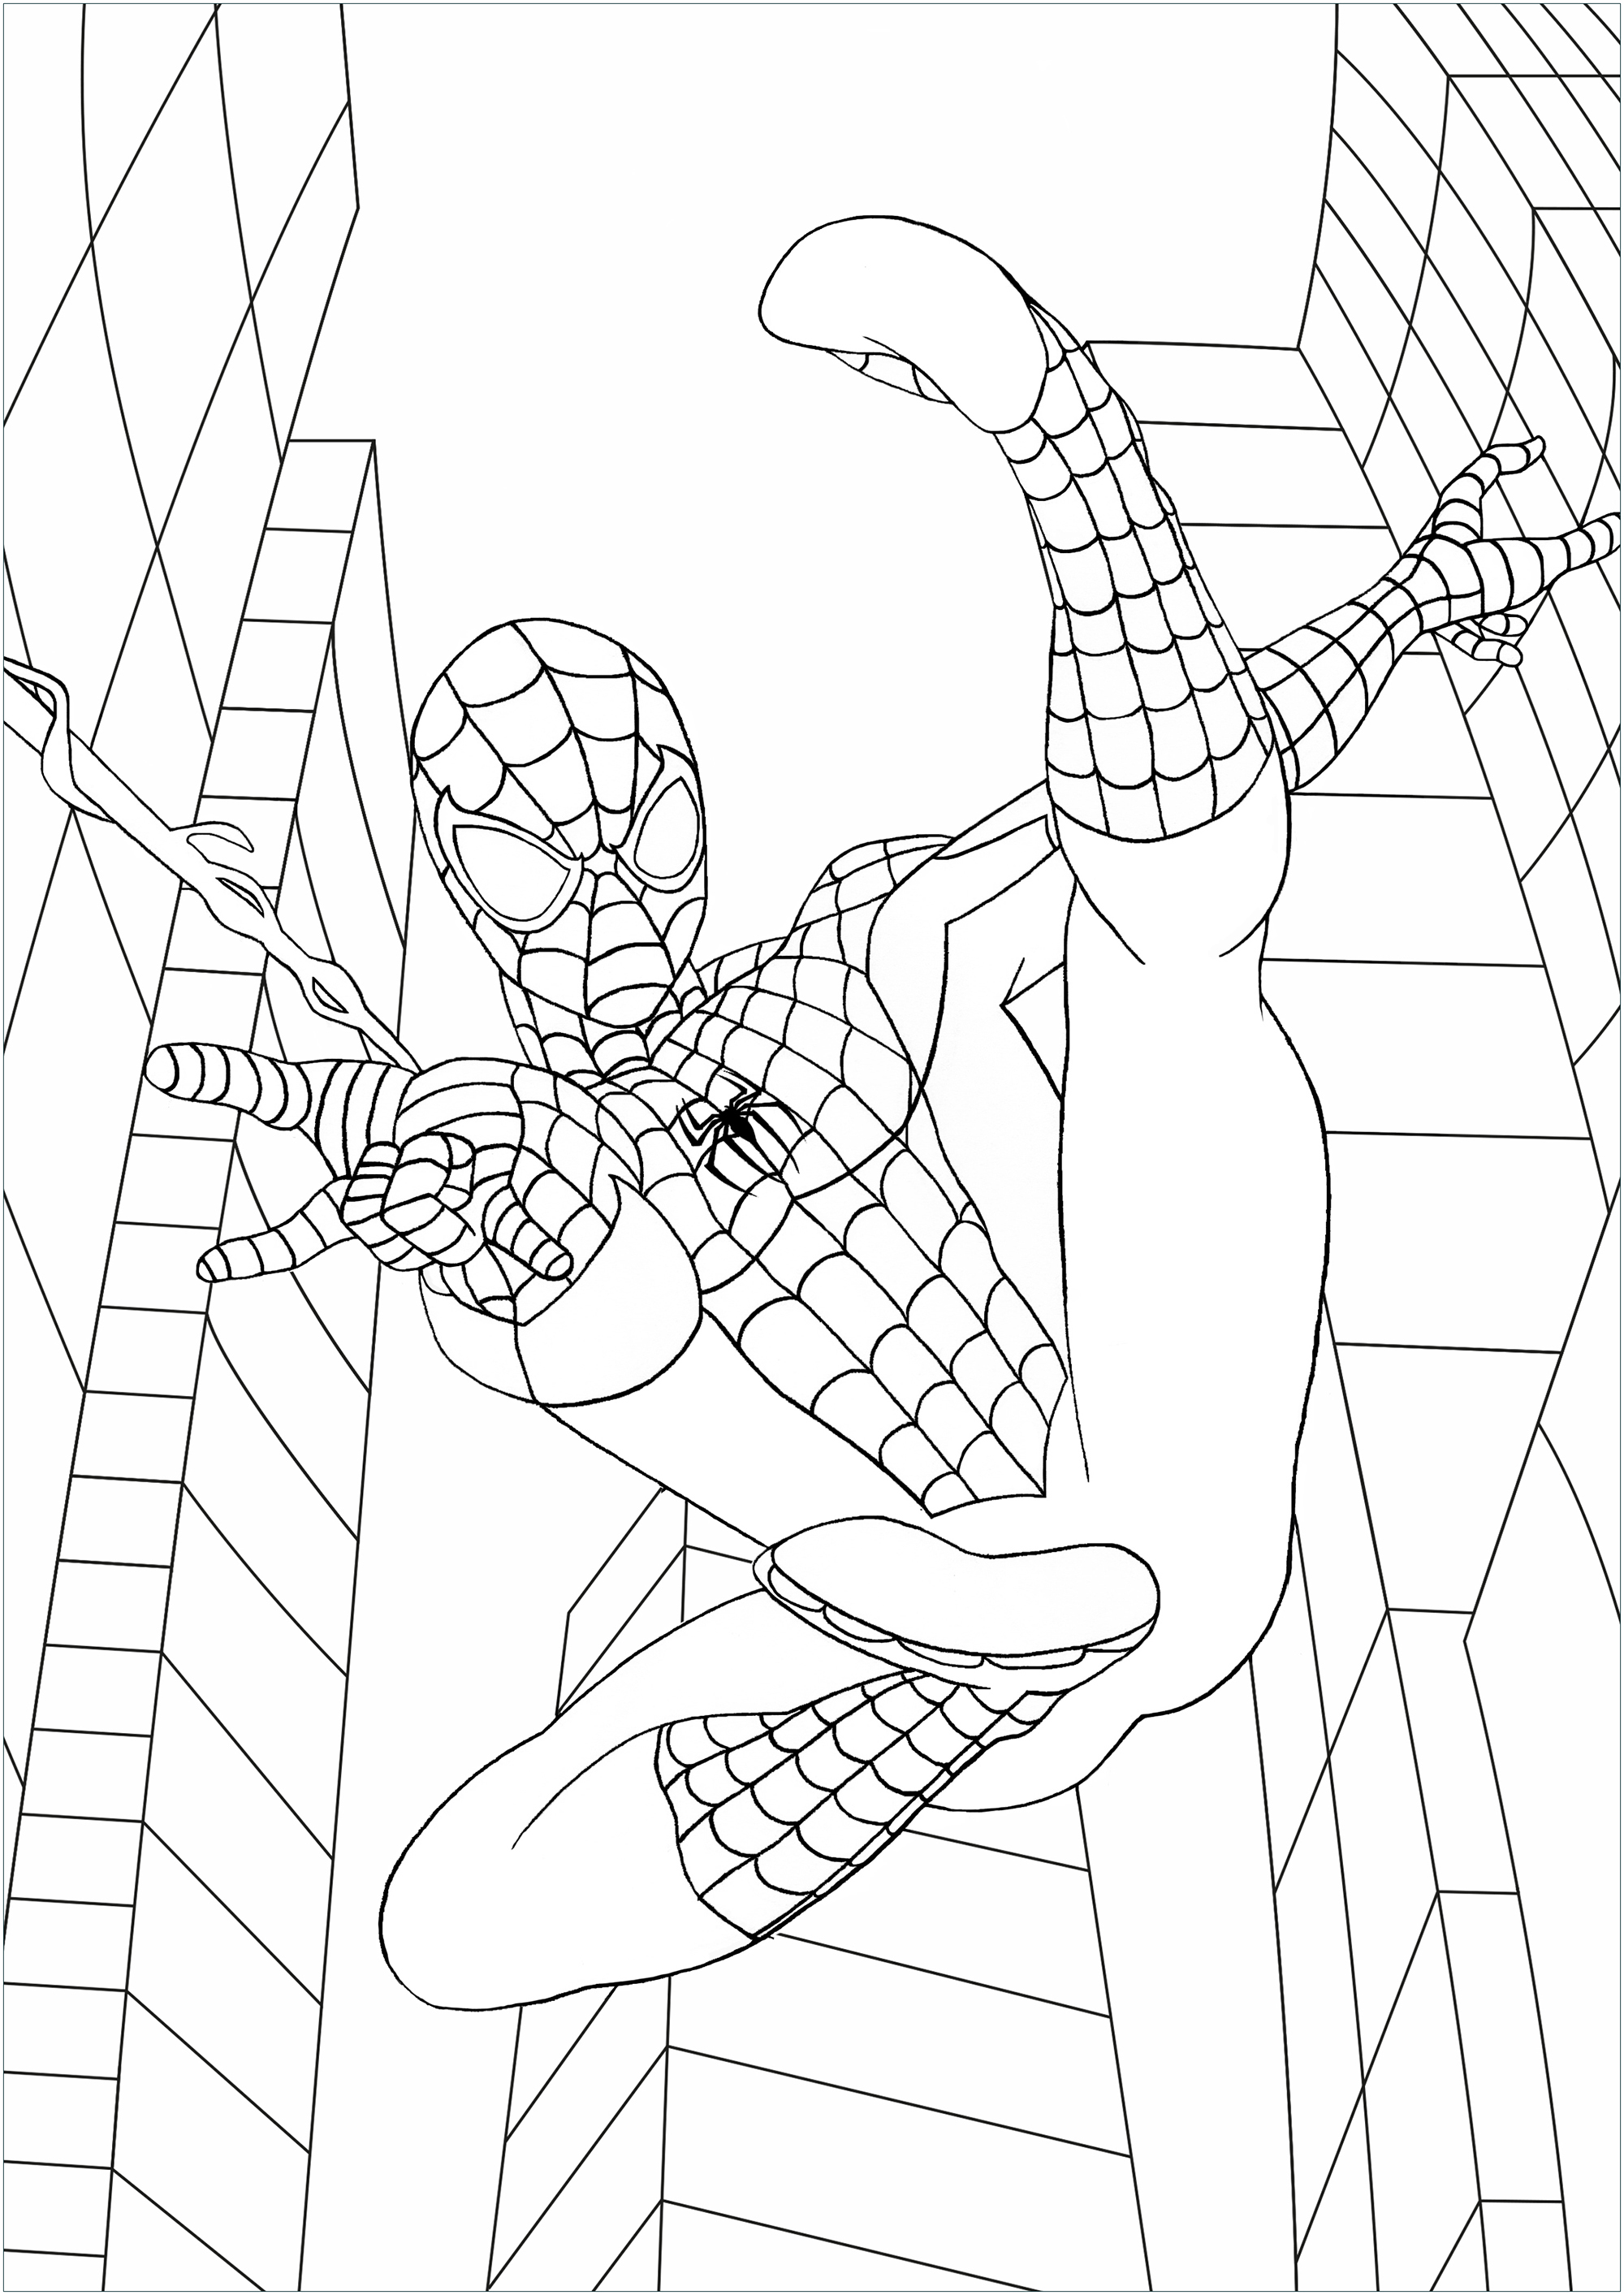 Voici notre super-héros araignée en pleine action, en haute voltige, dans les rues de sa ville natale : New York